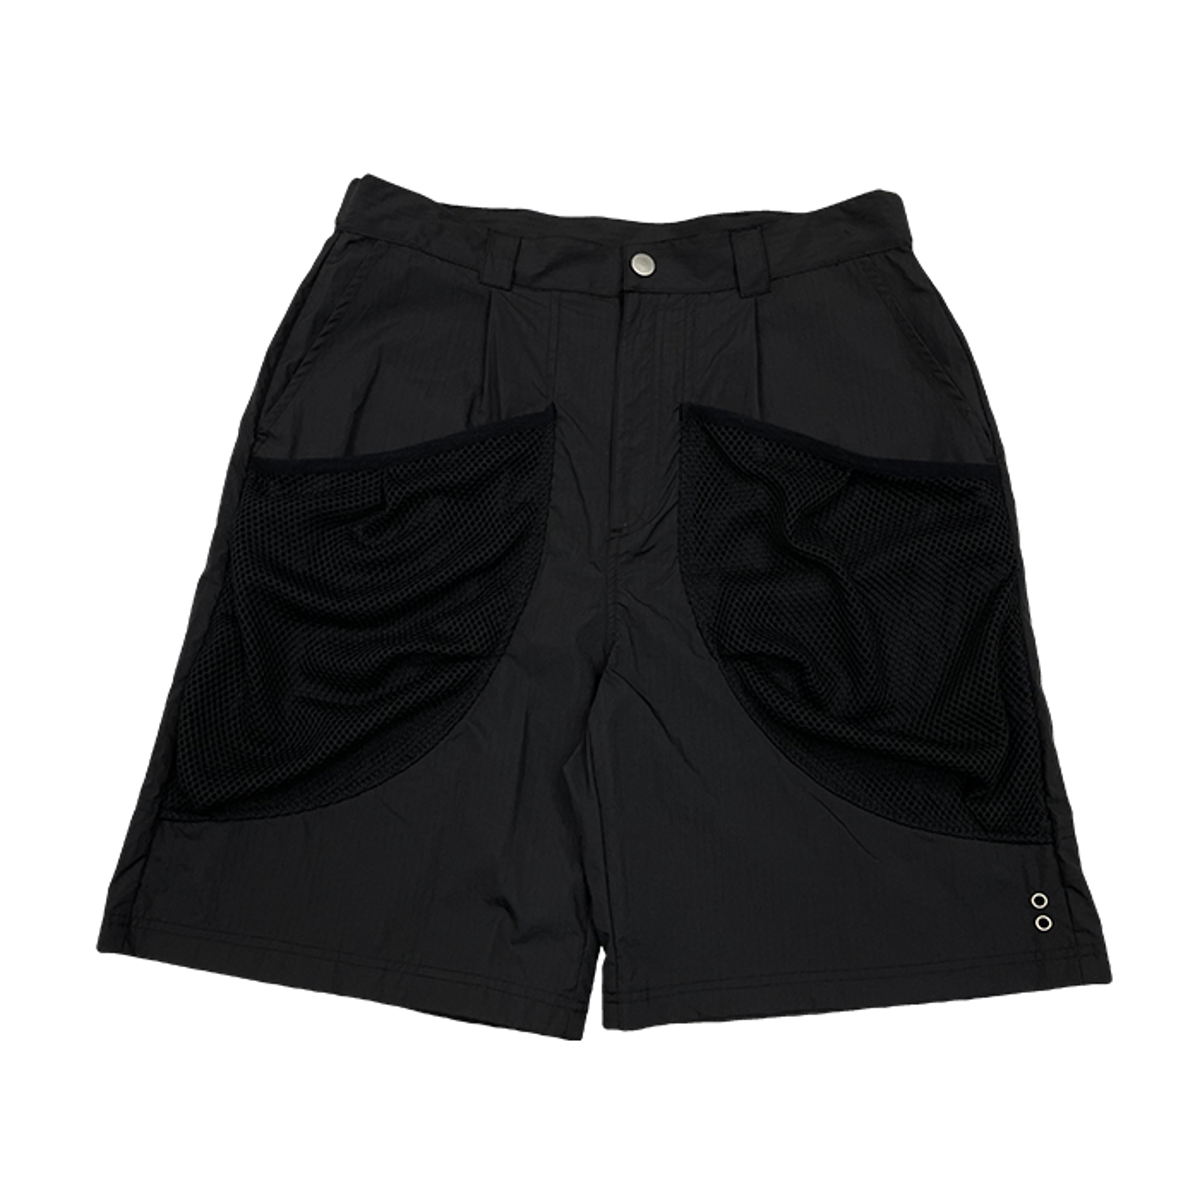 TCM volume nylon shorts pants (black)